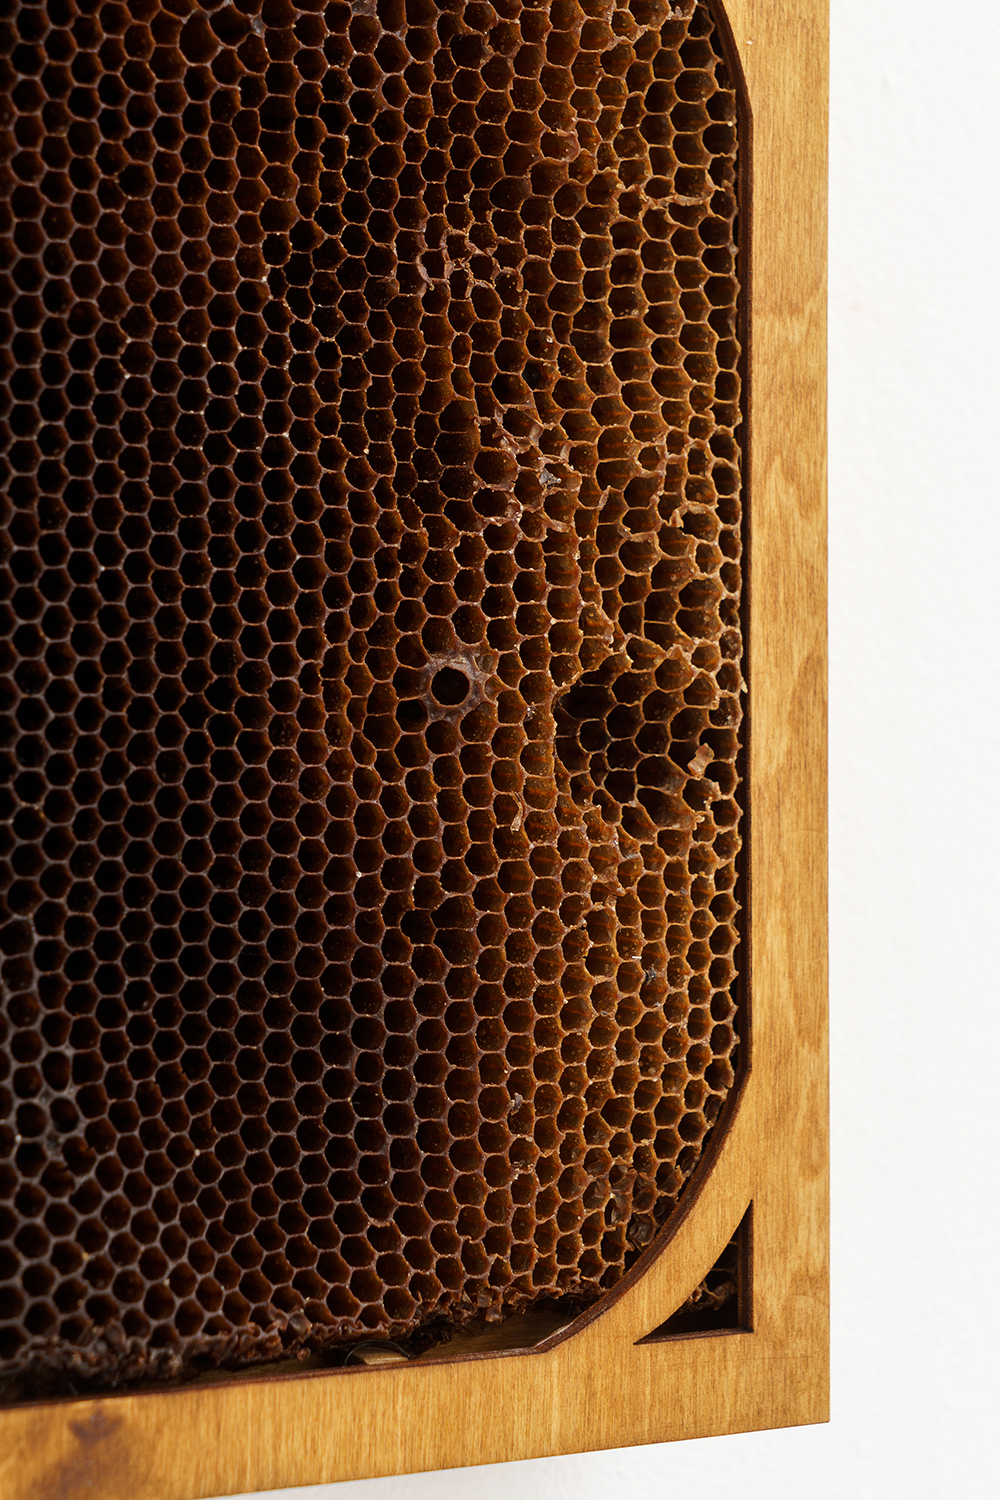 ‘Wild Rumor’, 2022, ink, linden, plywood, honeycombs, 38x25x6 cm (Details)